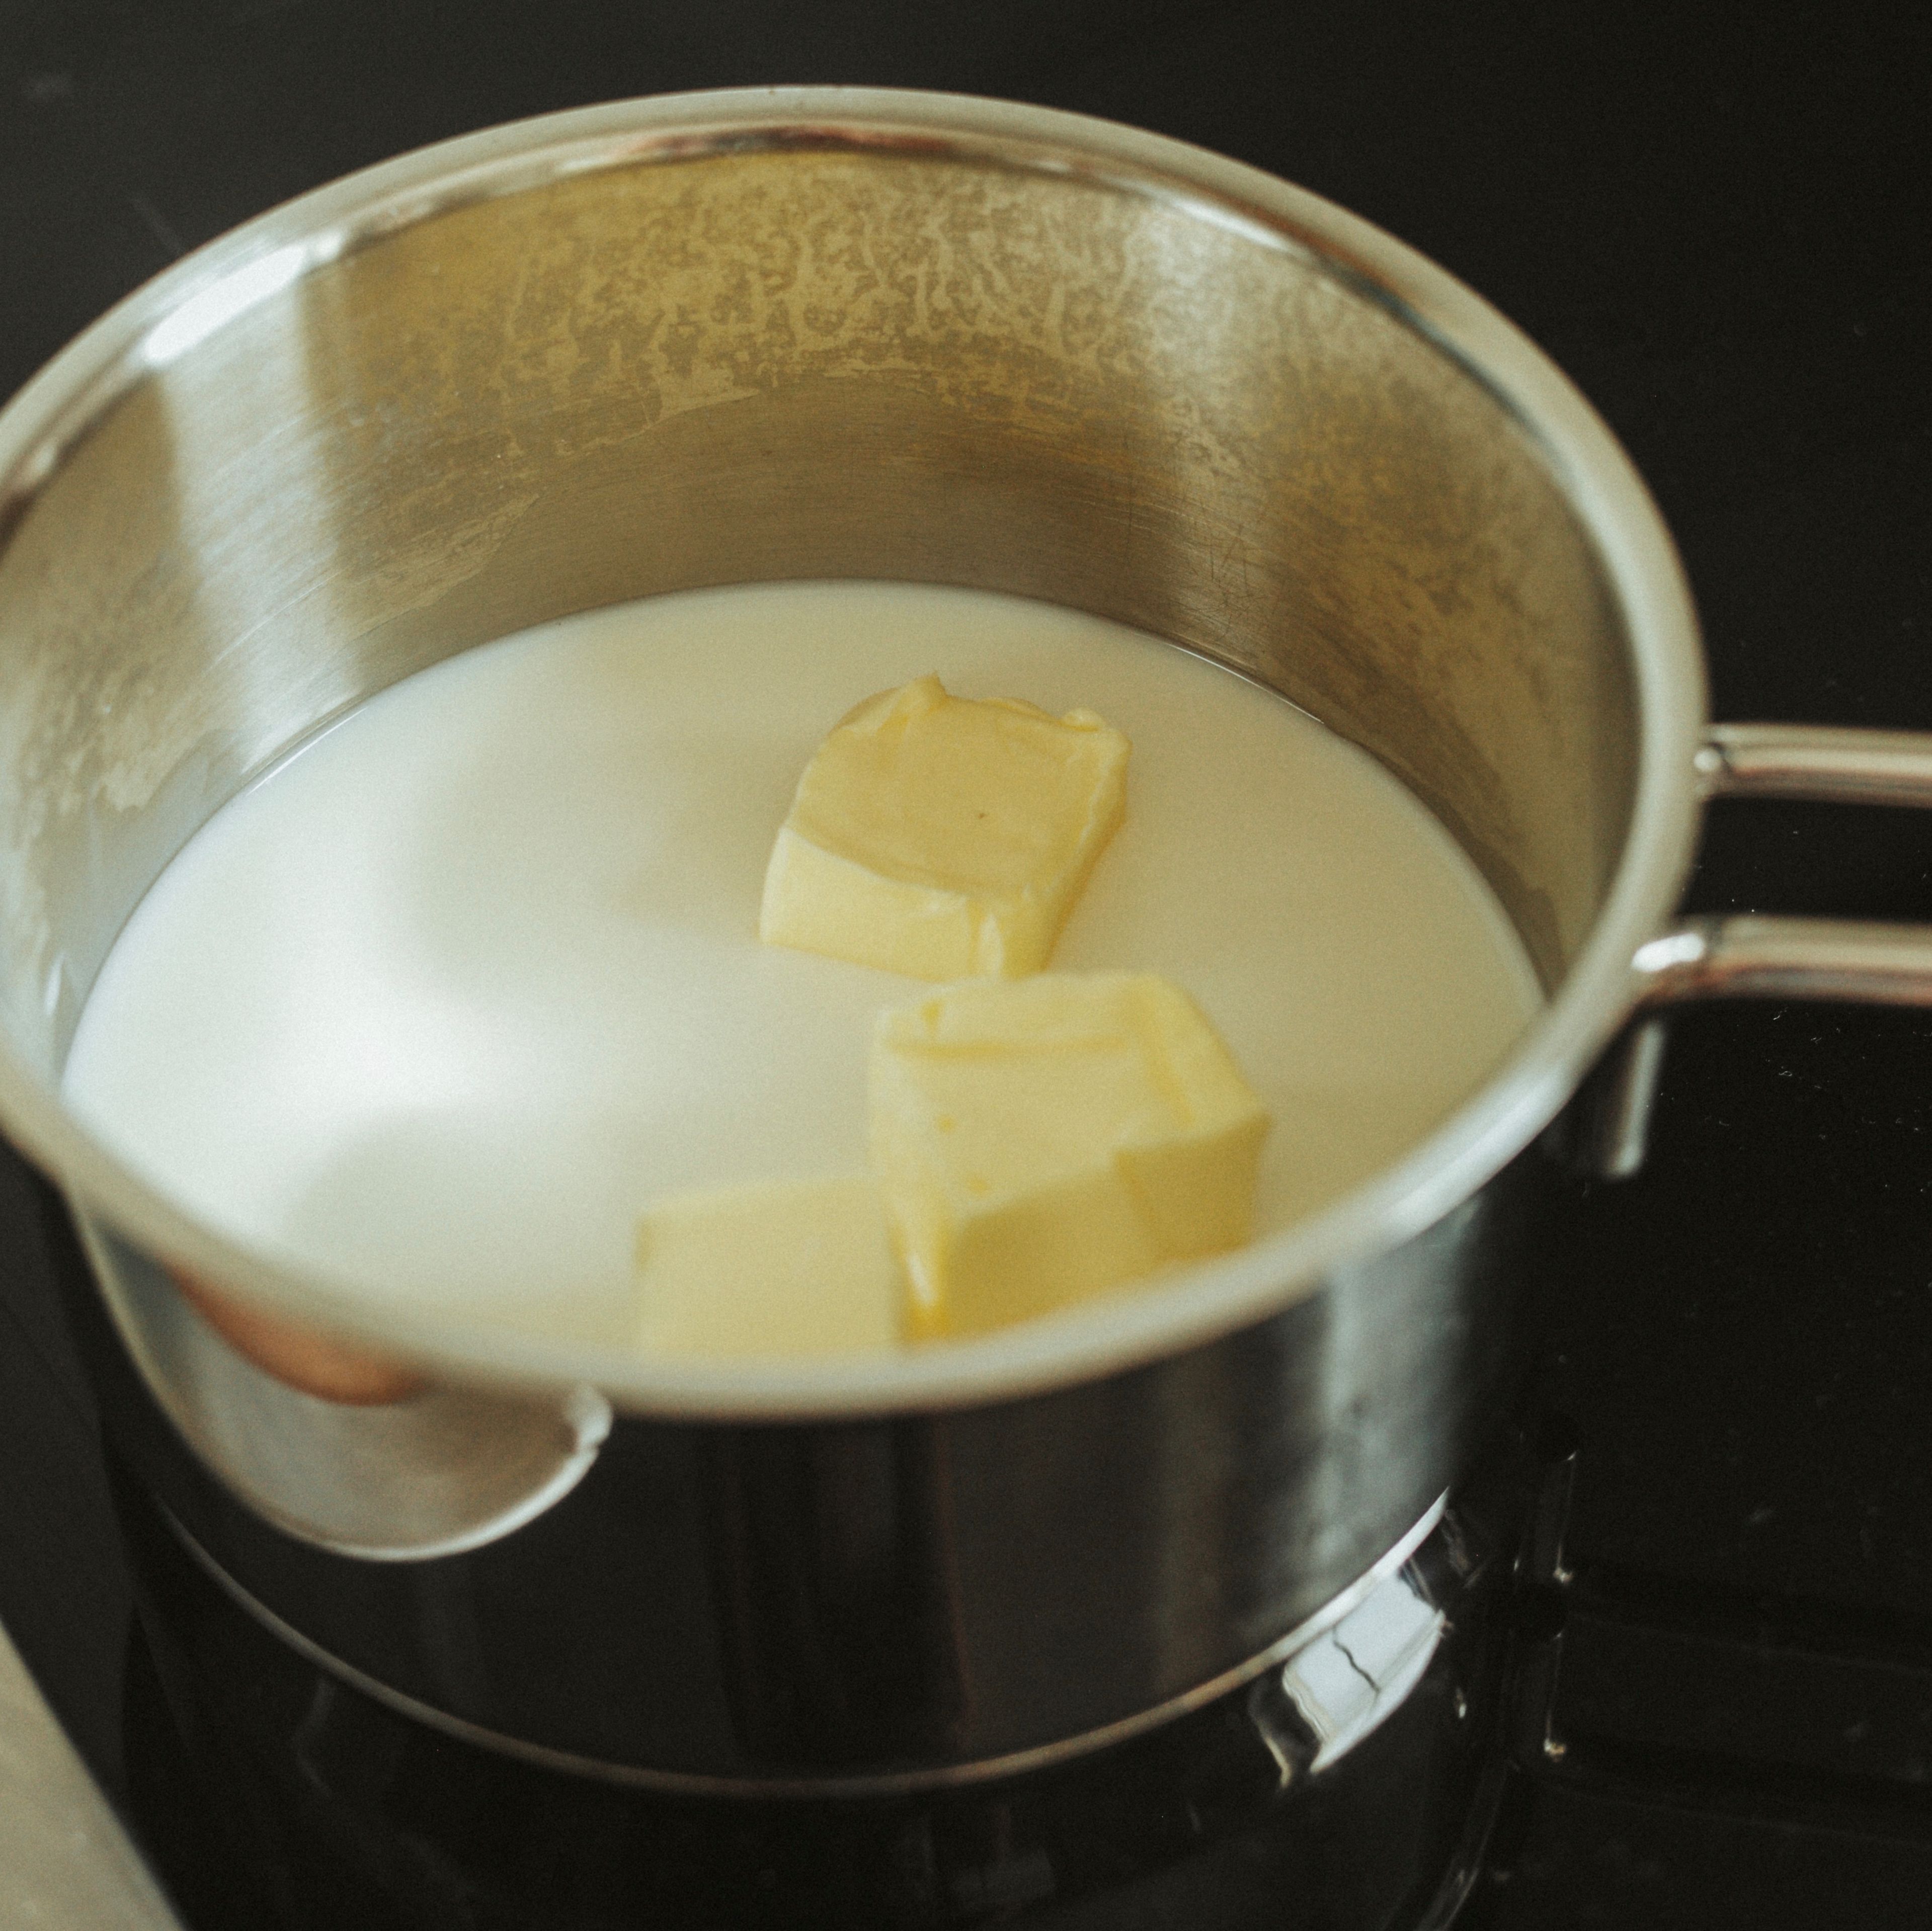 Für den Hefeteig Milch und Butter in einen kleinen Kochtopf geben und auf dem Herd bei schwacher Hitze langsam erwärmen, bis die Milch lauwarm und die Butter geschmolzen ist. Die Milch-Butter-Masse in eine Schüssel geben.